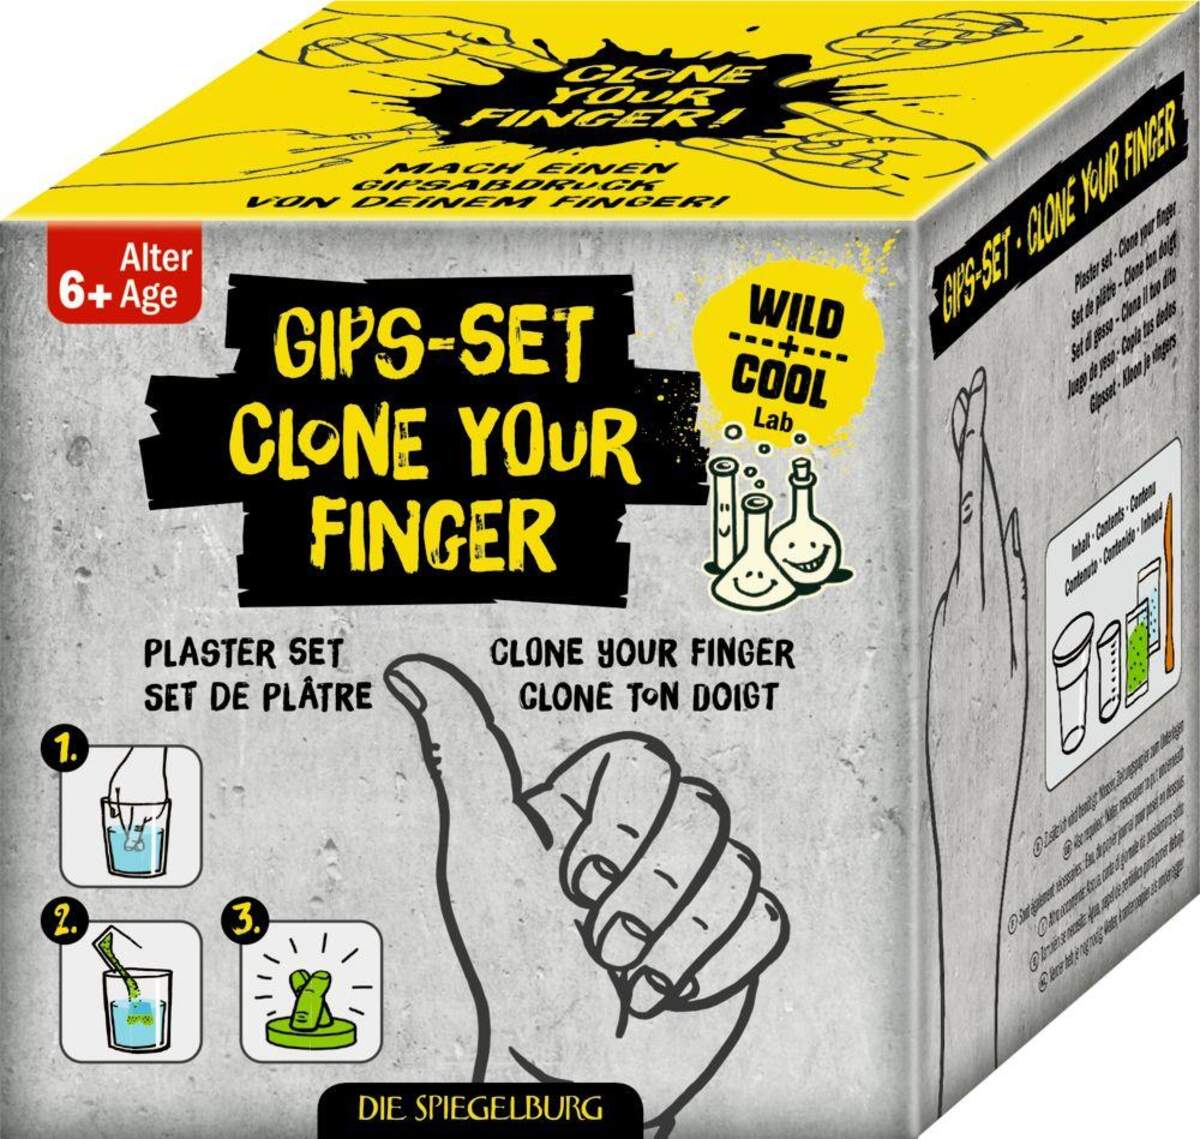 Die Spiegelburg Gips-Set "Clone your Finger" Wild+Cool